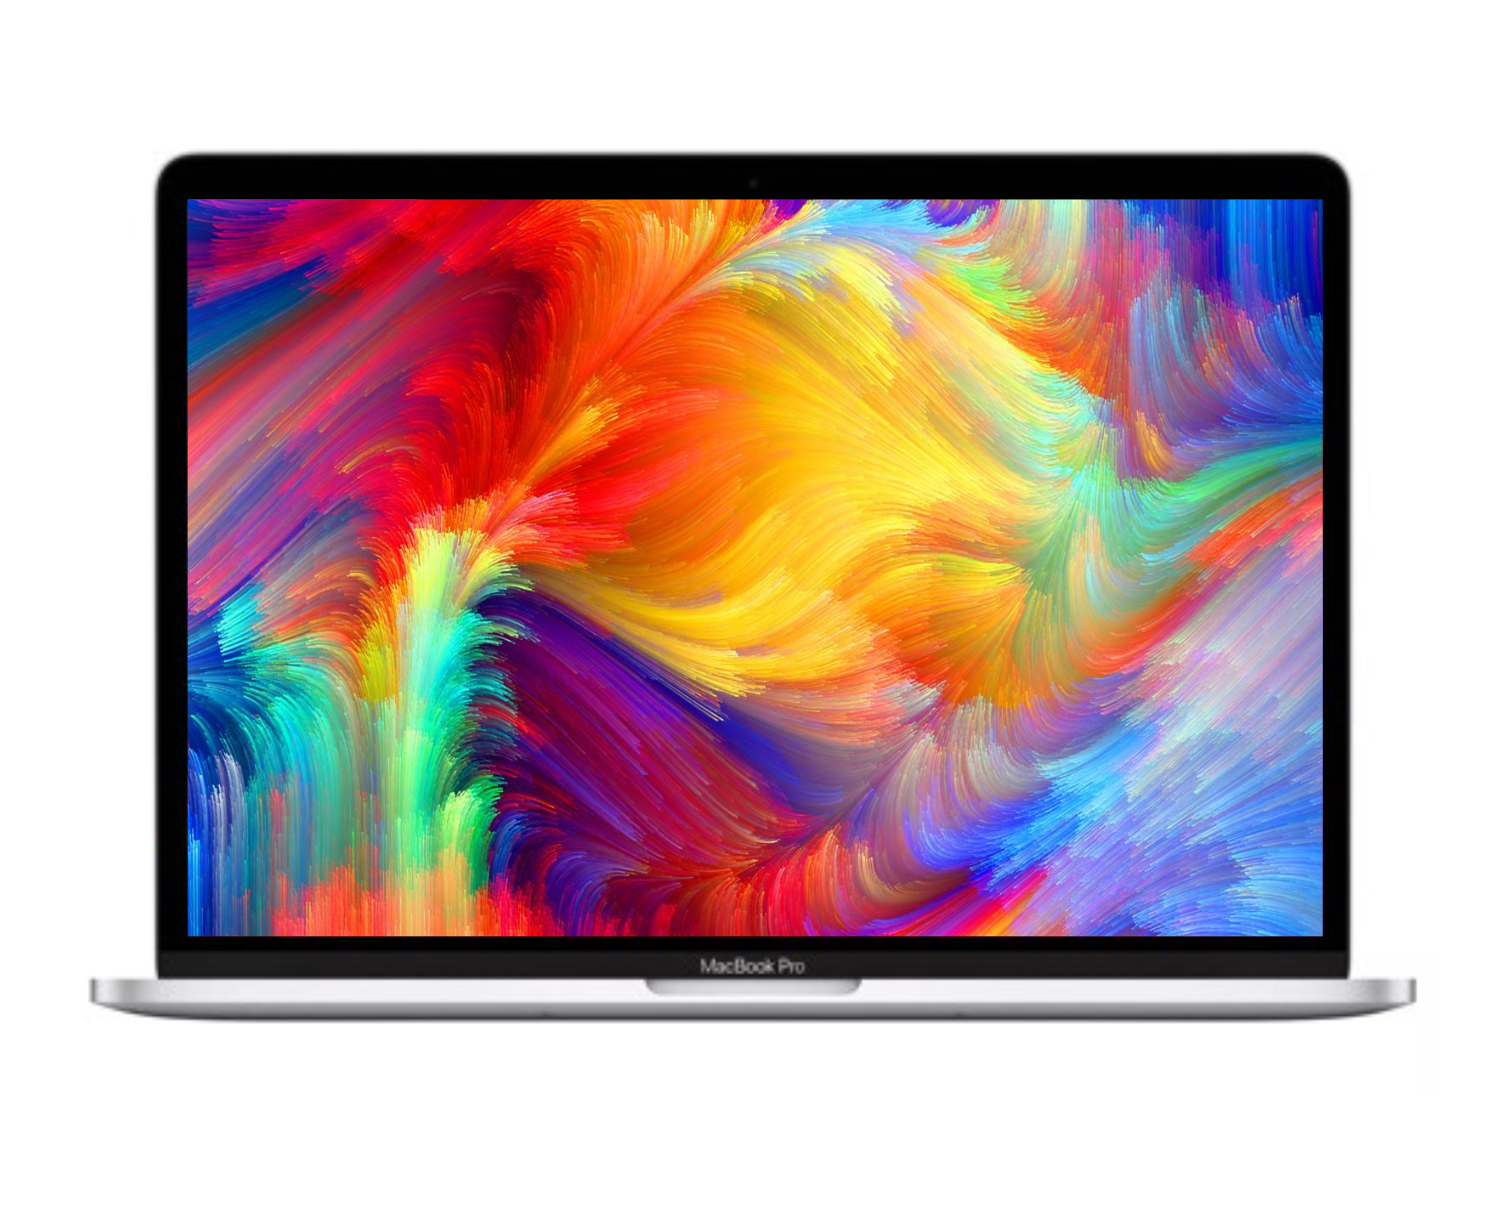 Macbook Pro Retina 15 inch Core i7 256GB